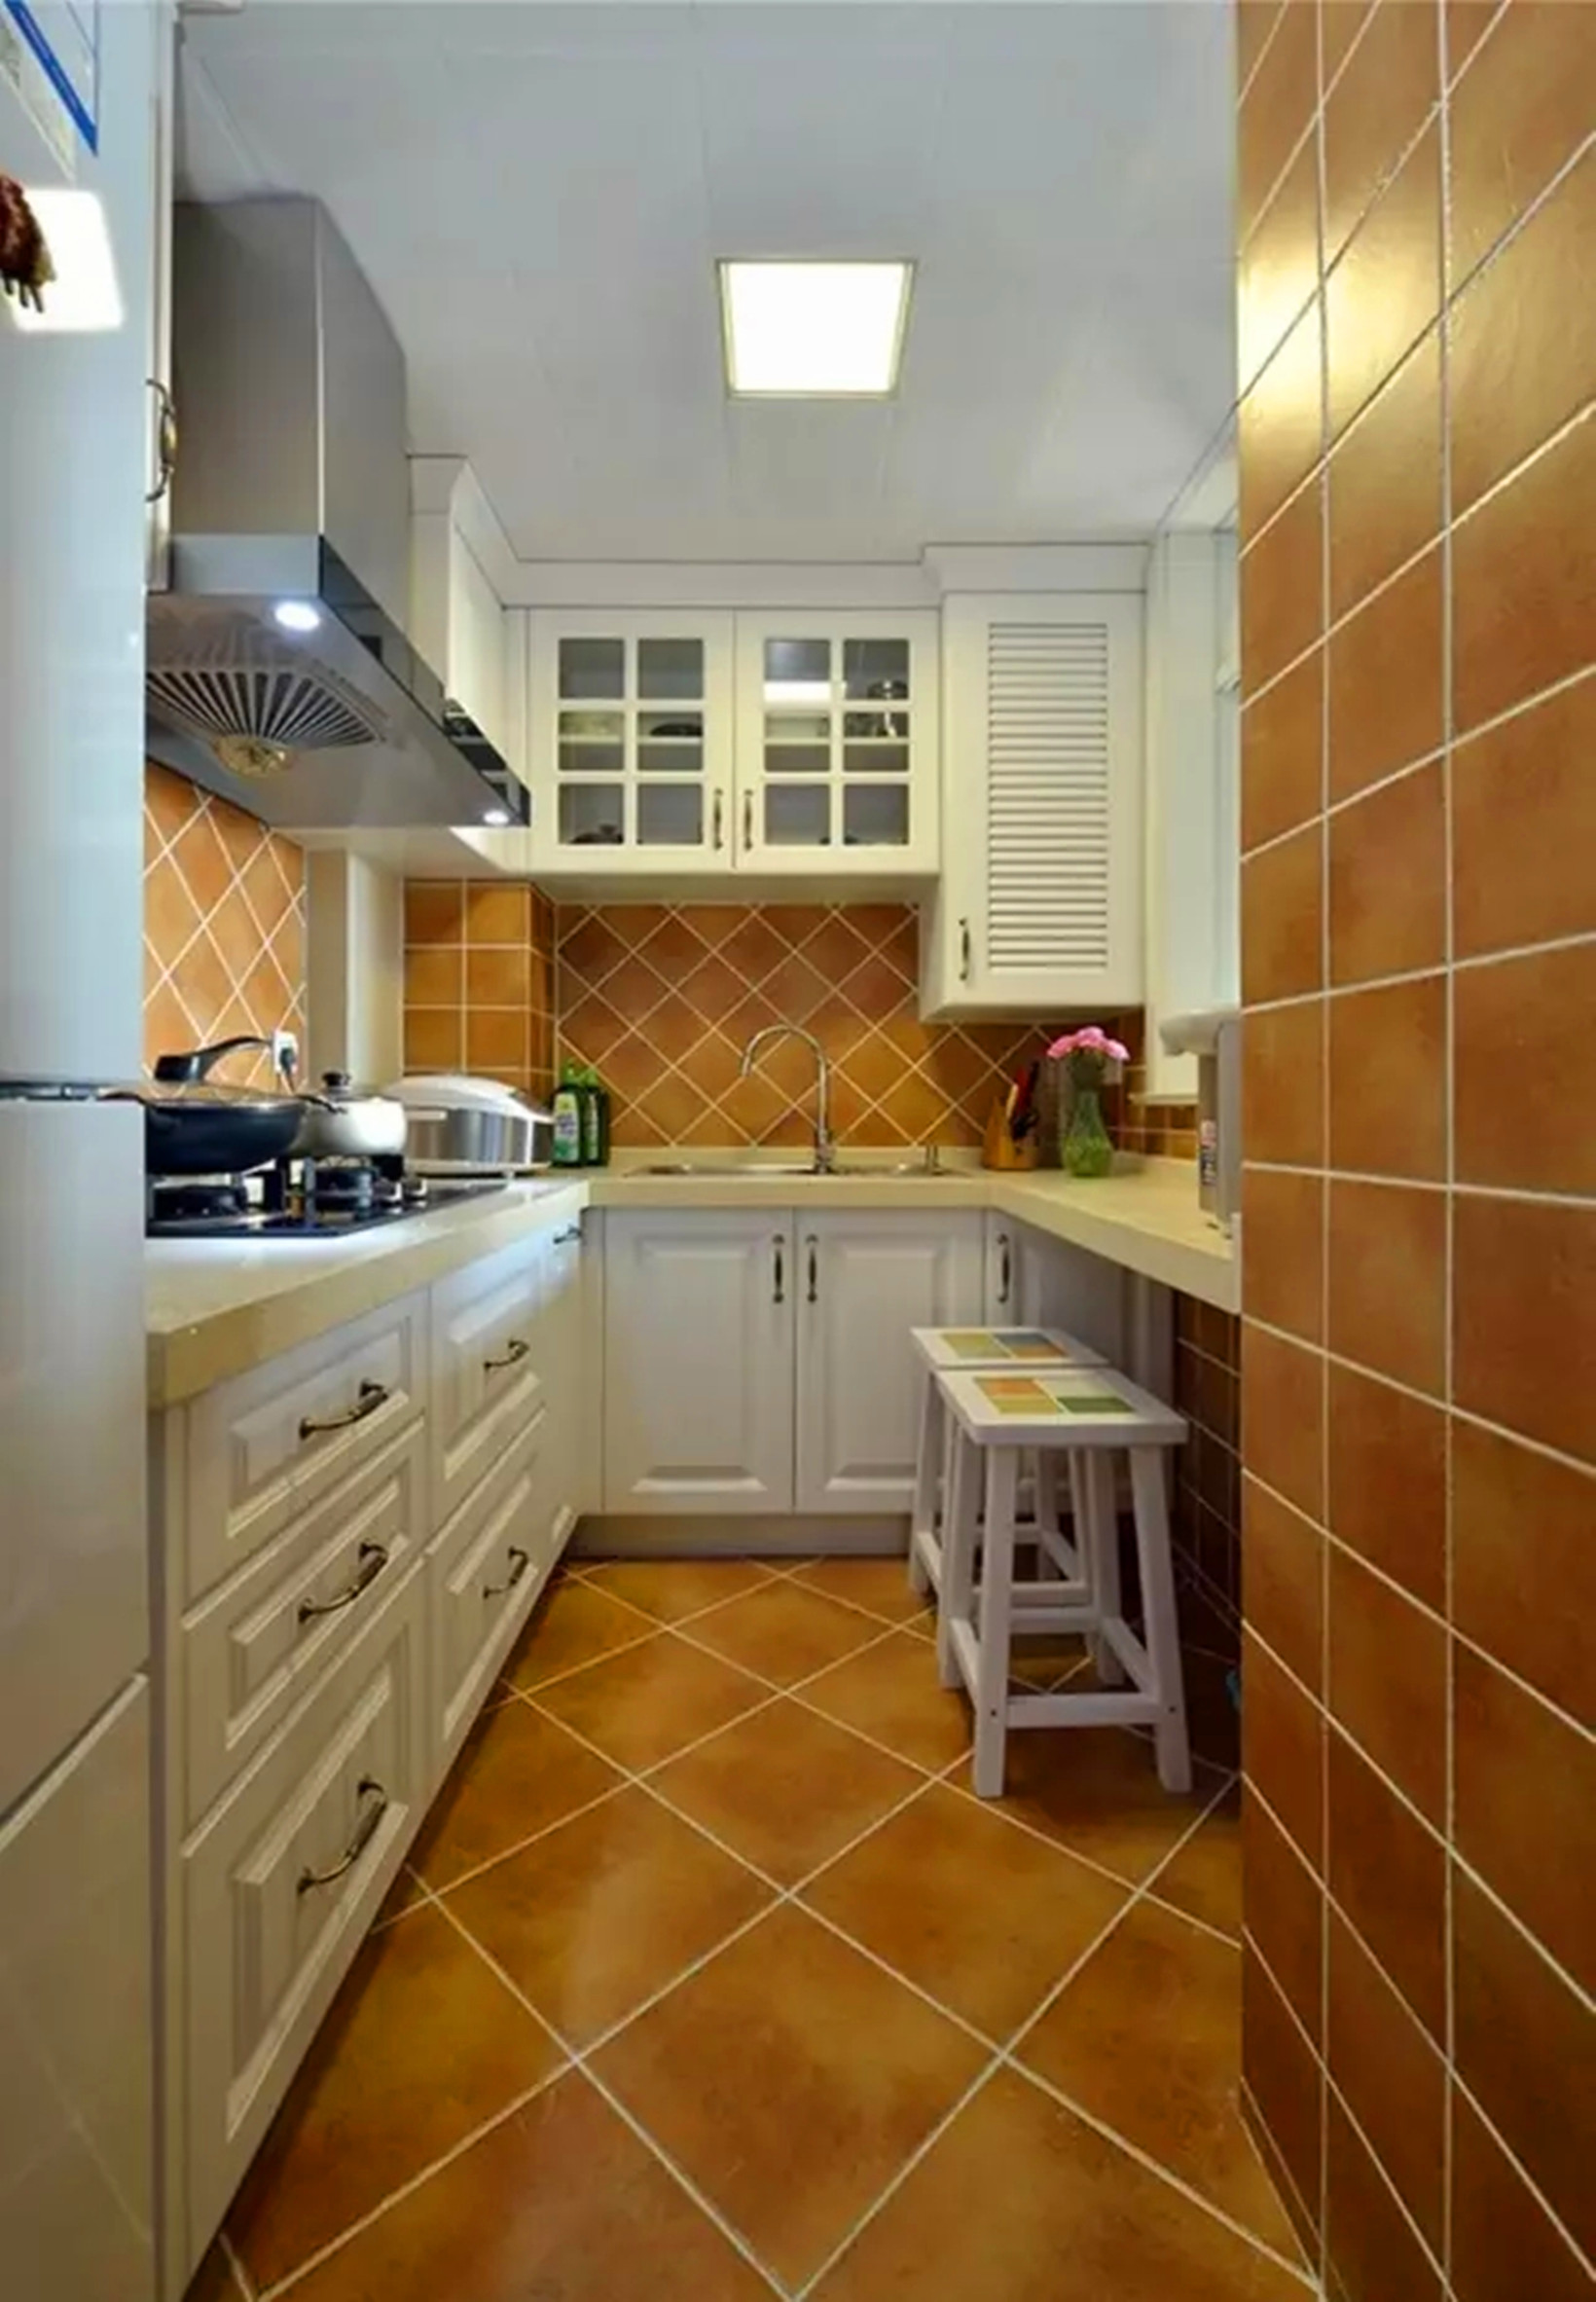 二居 复古 美式 厨房图片来自高度国际装饰宋增会在怡兴园小区60平